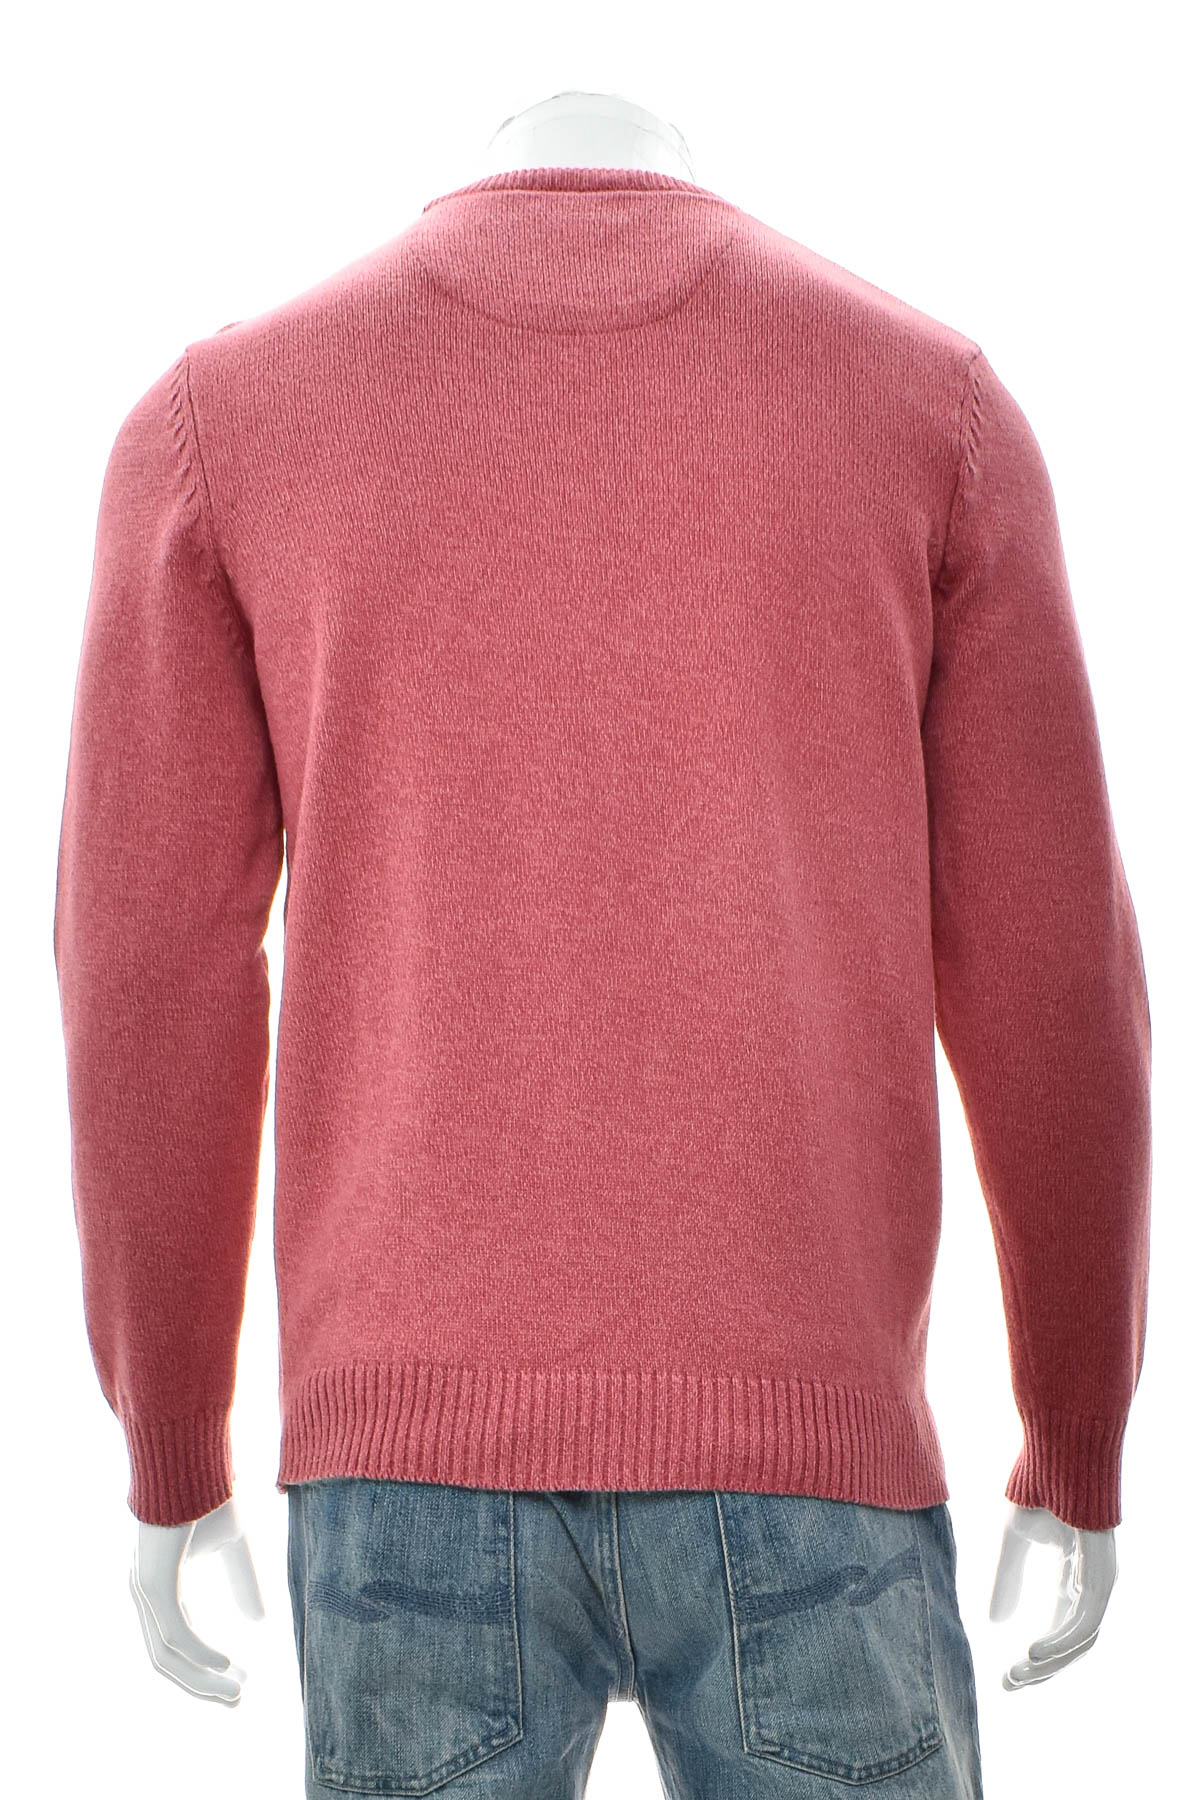 Men's sweater - Atlantic Bay - 1